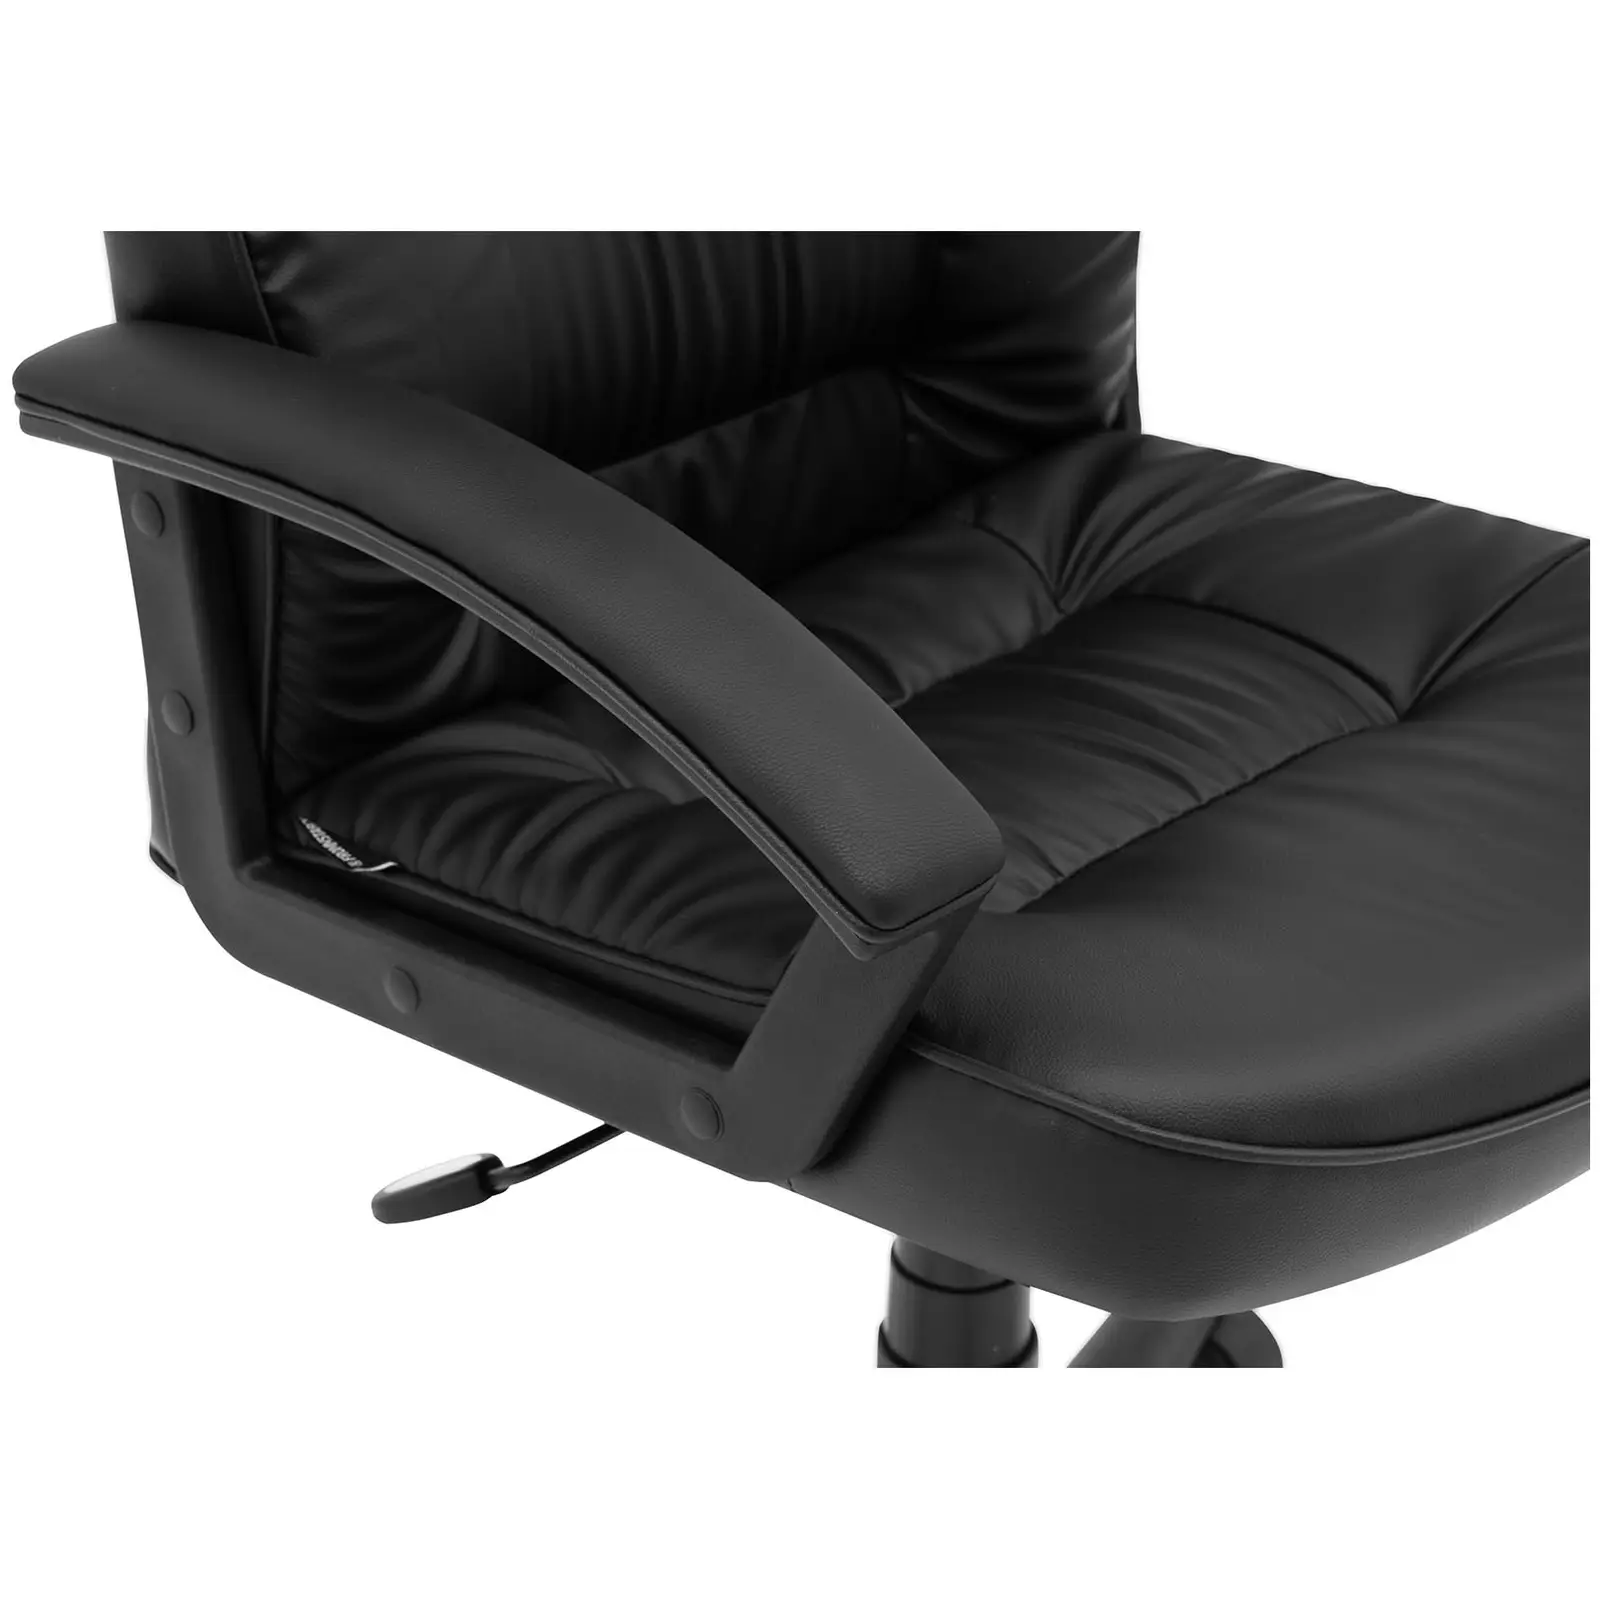 Chaise de bureau - Dossier en cuir synthétique - 100 kg - Coloris noir